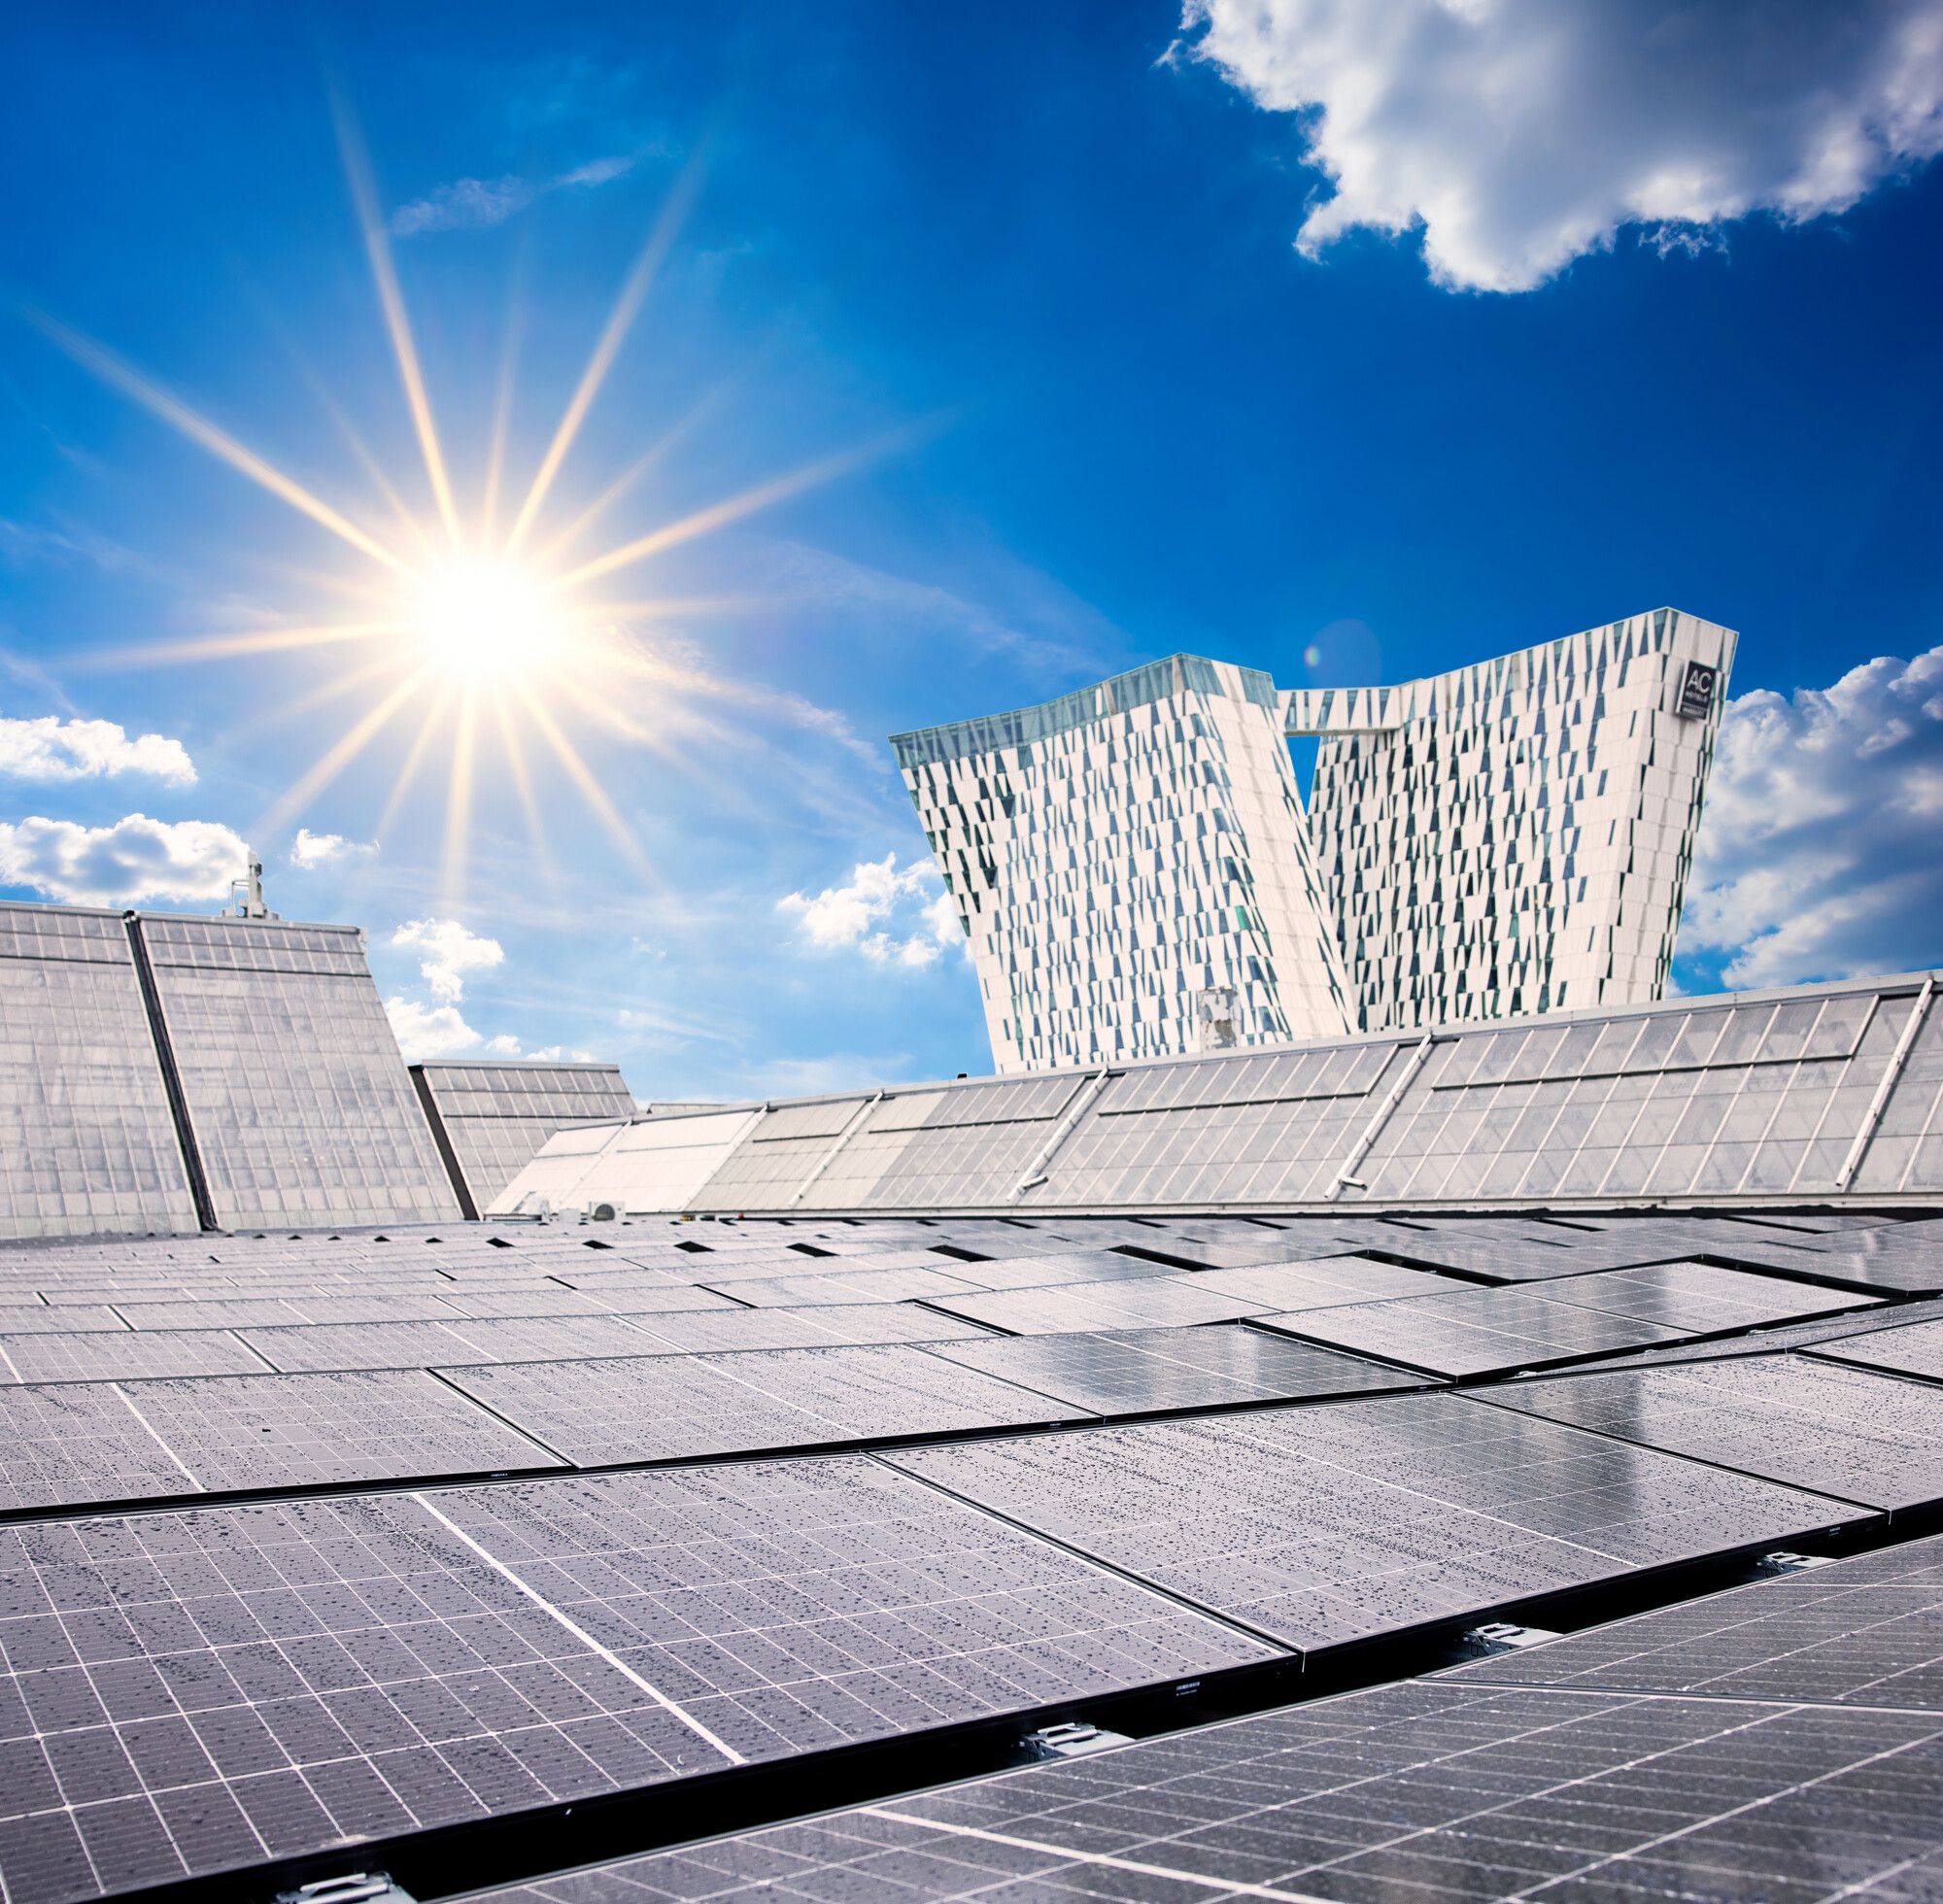 Solar Panel Park at Bella Center Copenhagen